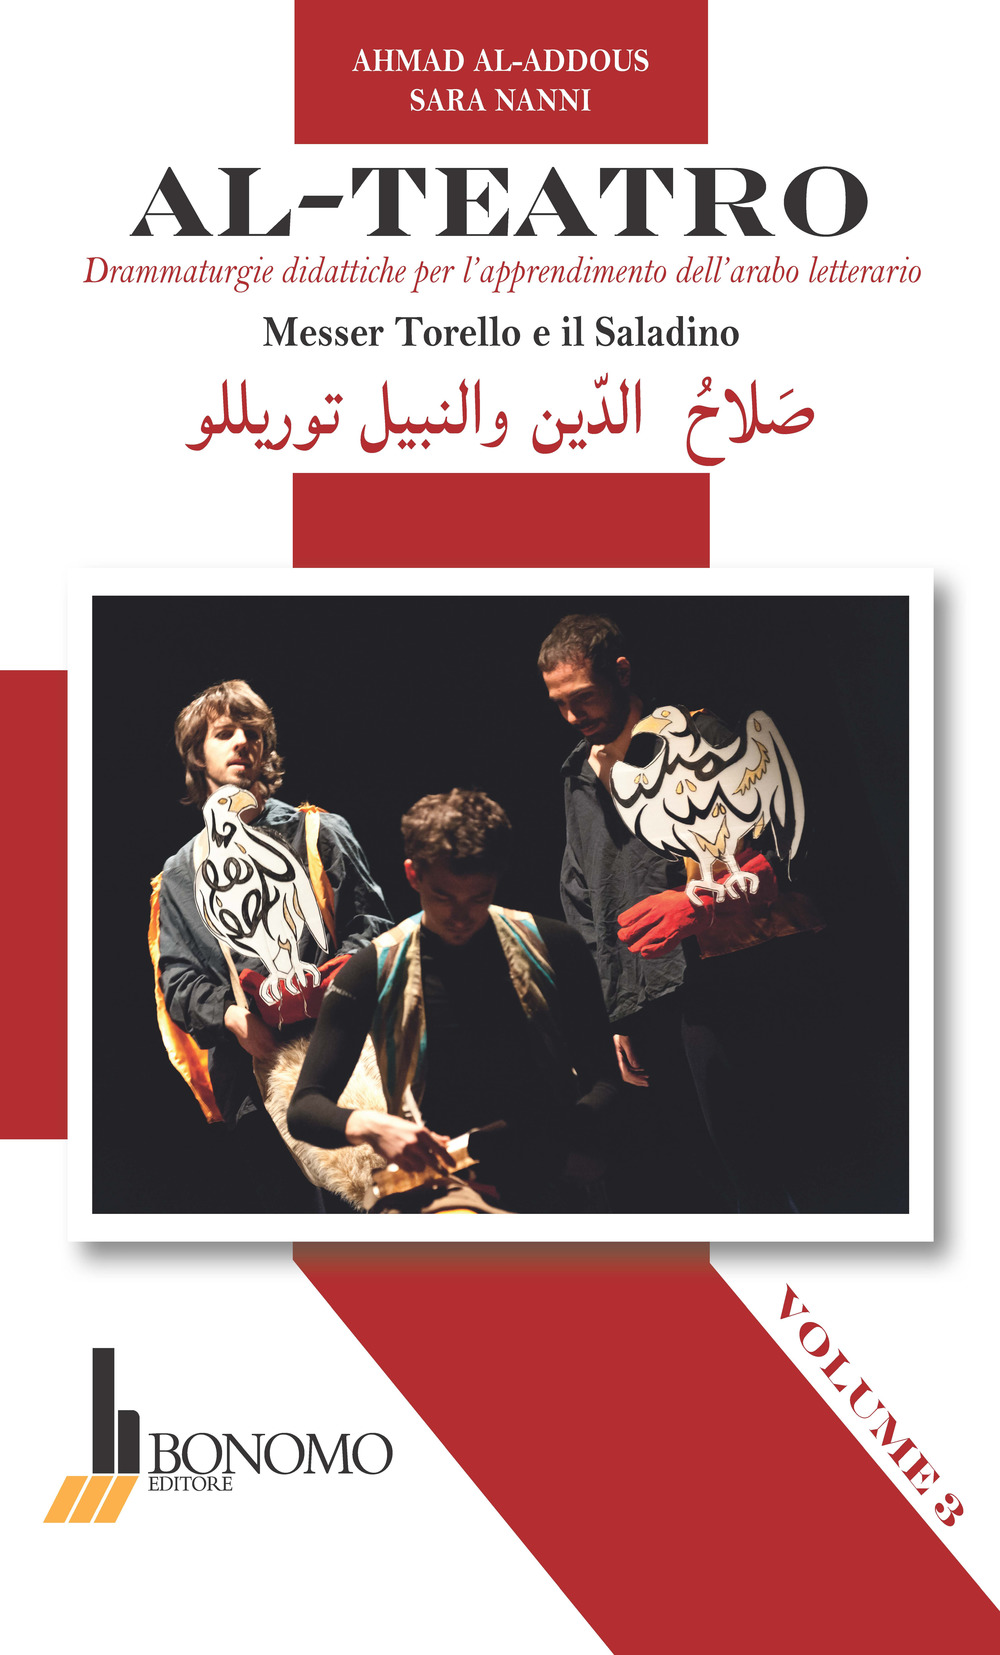 Al-teatro. Drammaturgie didattiche per l'apprendimento dell'arabo letterario. Ediz. araba e italiana. Vol. 3: Messer Torello e il Saladino